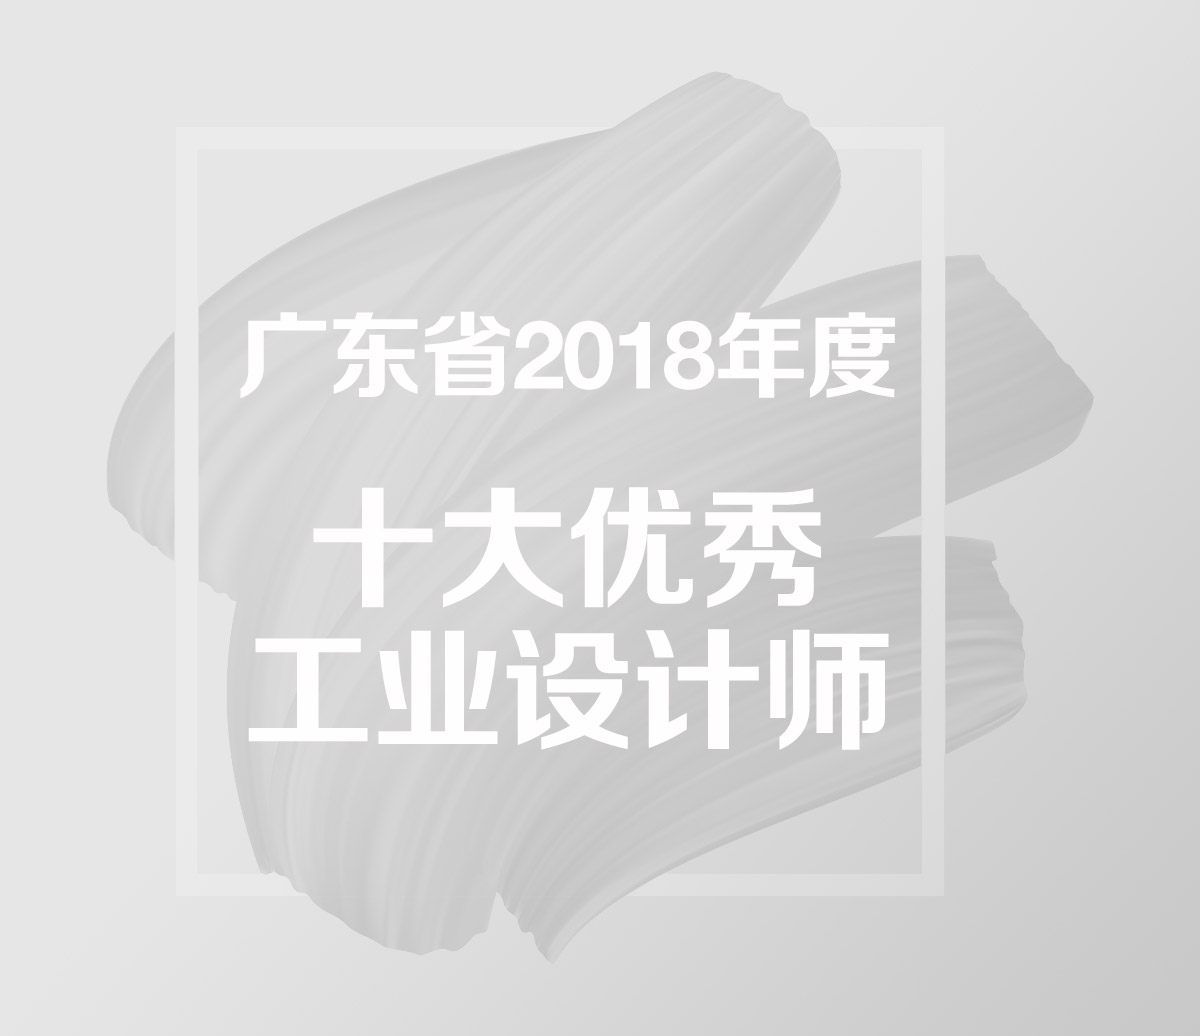 廣東省2018年度十大優秀工業設計師